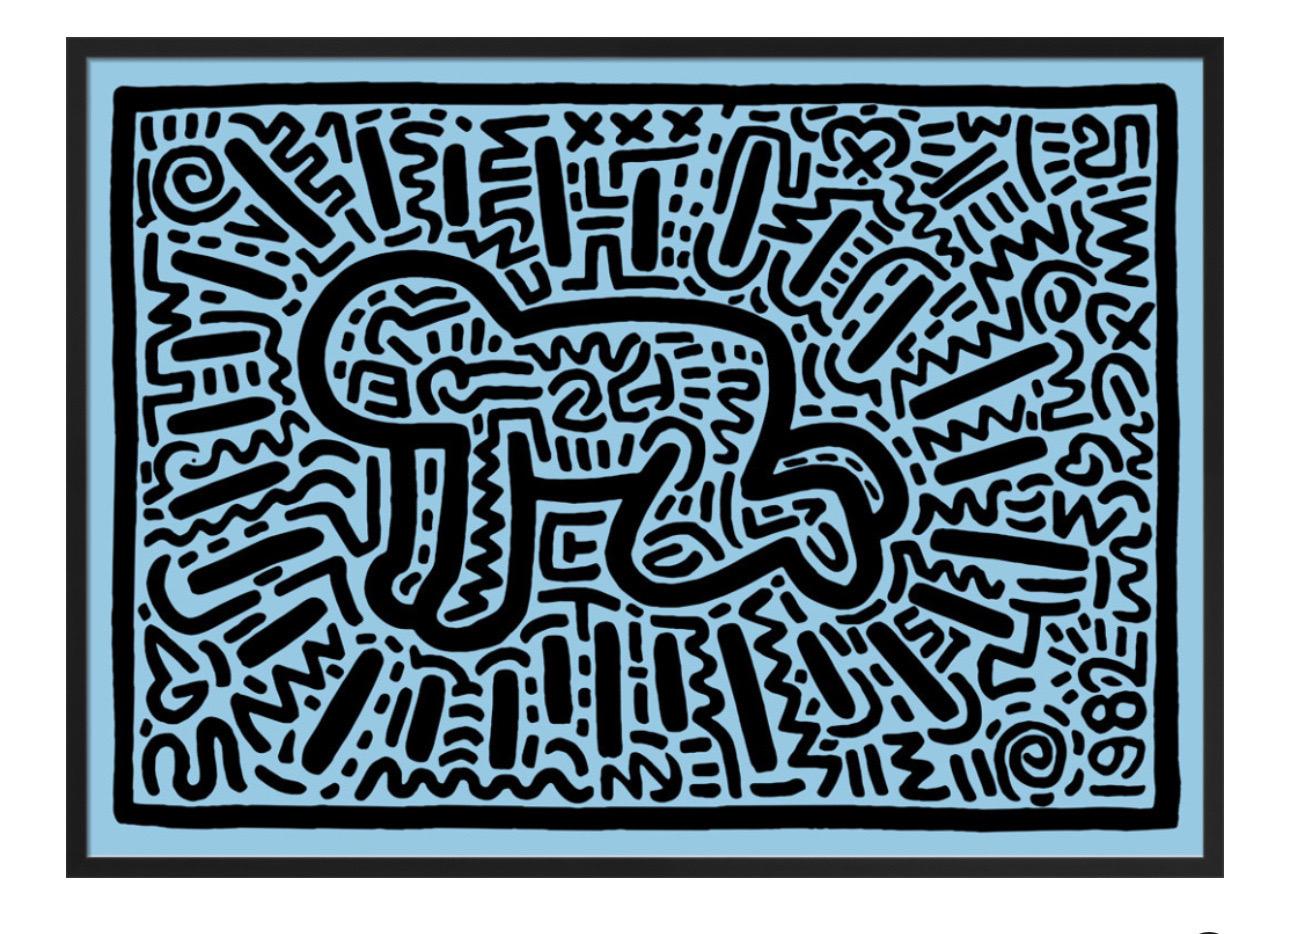 Keith Haring, Sans titre (bébé) (encadré) 

Papier de conservation mat de 250 g/m². Papier de haute qualité fabriqué en Allemagne à partir de pâte de bois sans acide ni chlore. Le papier est fabriqué sur une machine Fourdrinier, un procédé mis au